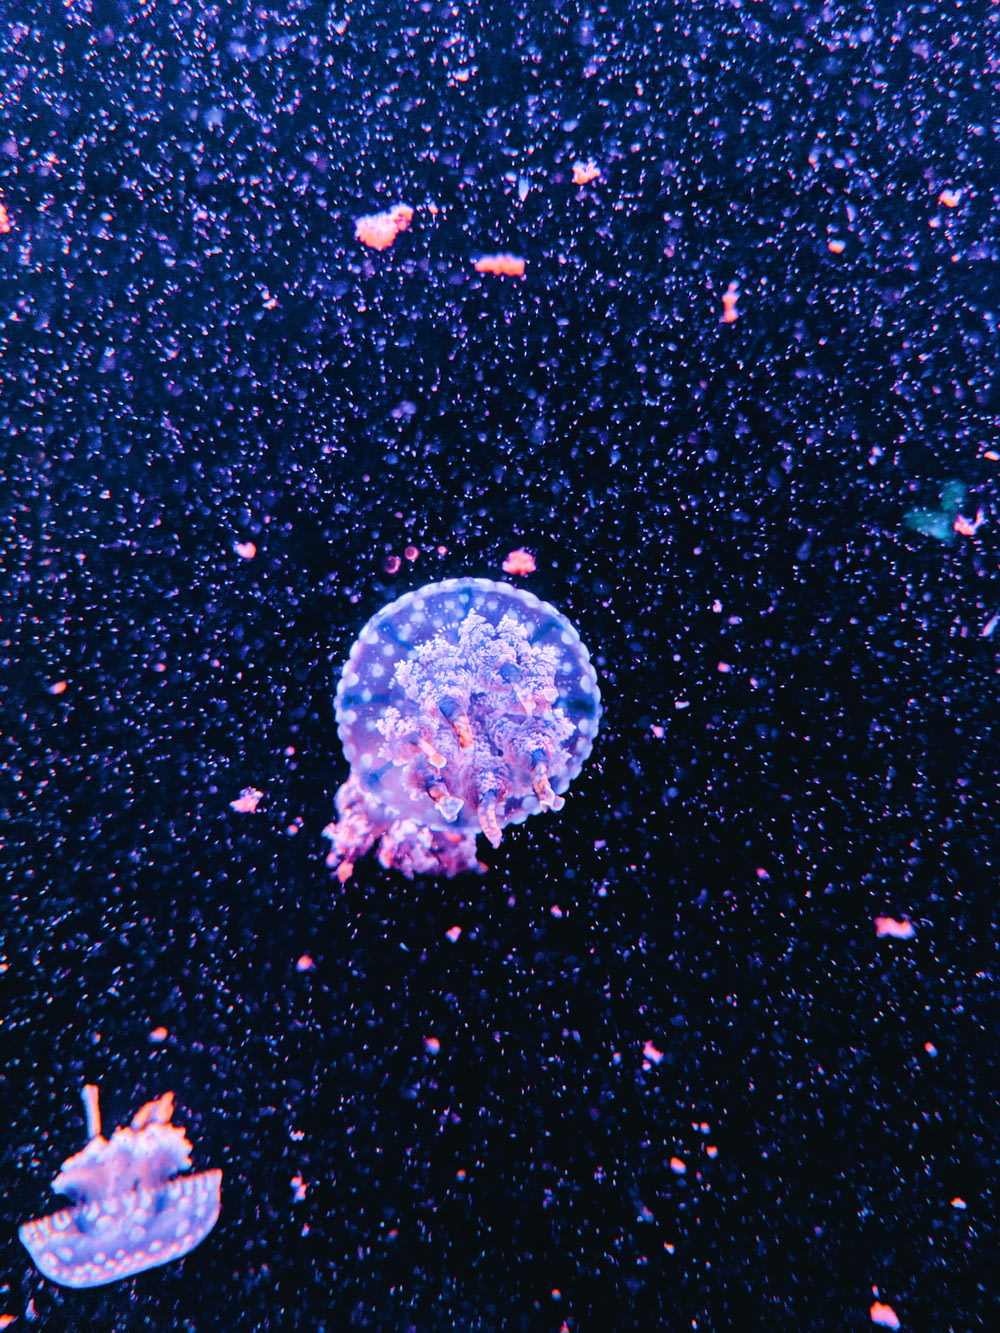 a jellyfish floating in a dark blue ocean